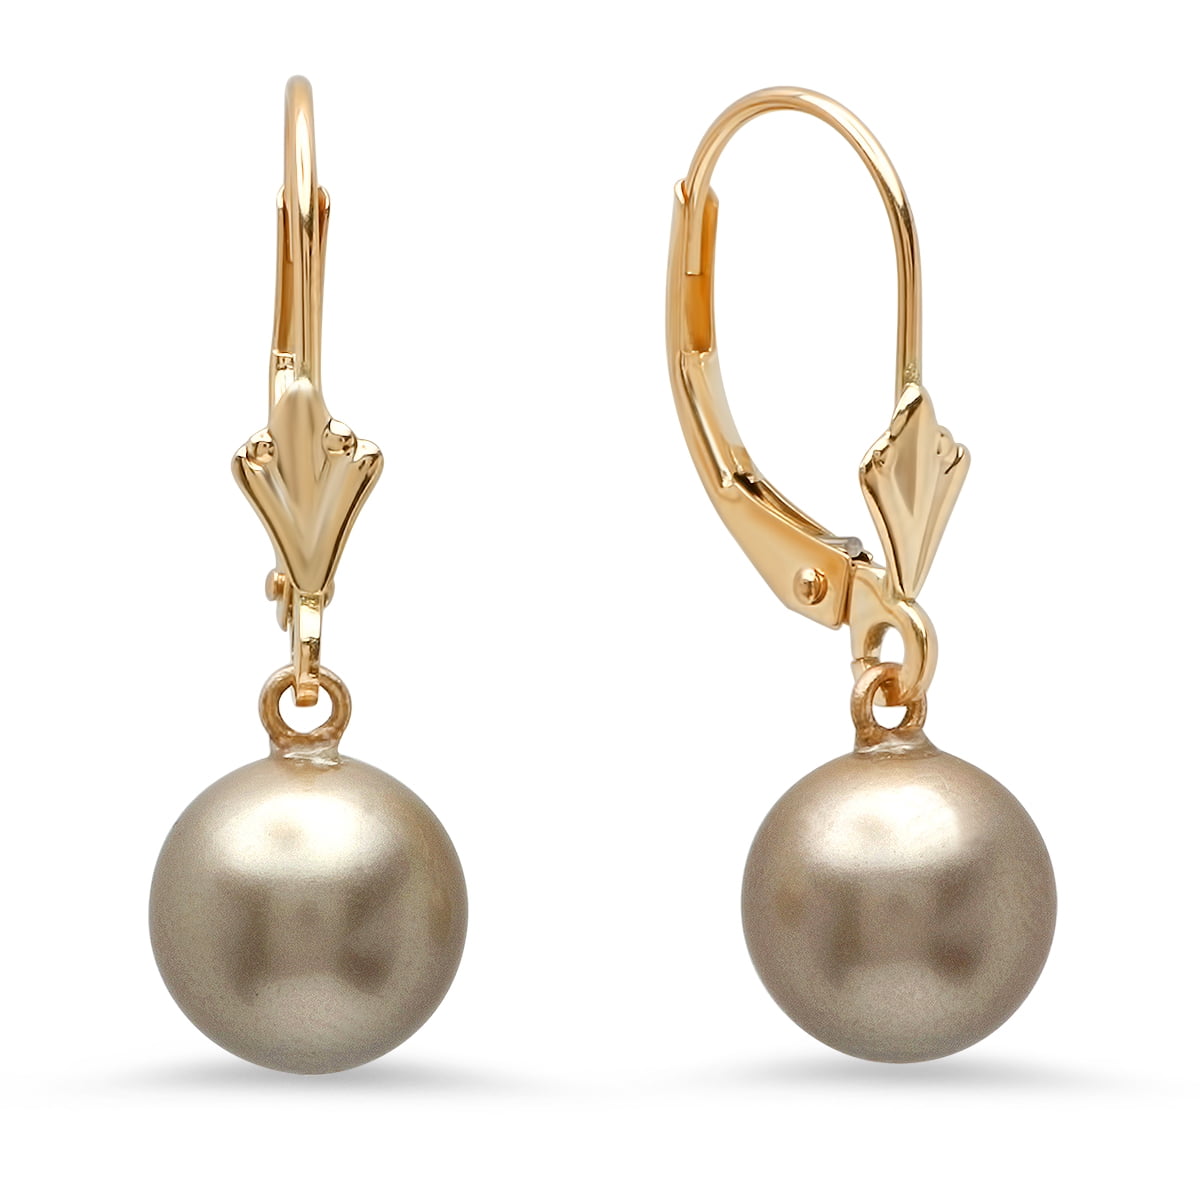 Jewellery Earrings Dangle & Drop Earrings 9ct Gold Dangle Drop Twist Earrings Ladies 32 mm Real 9ct Gold Gift Boxed 